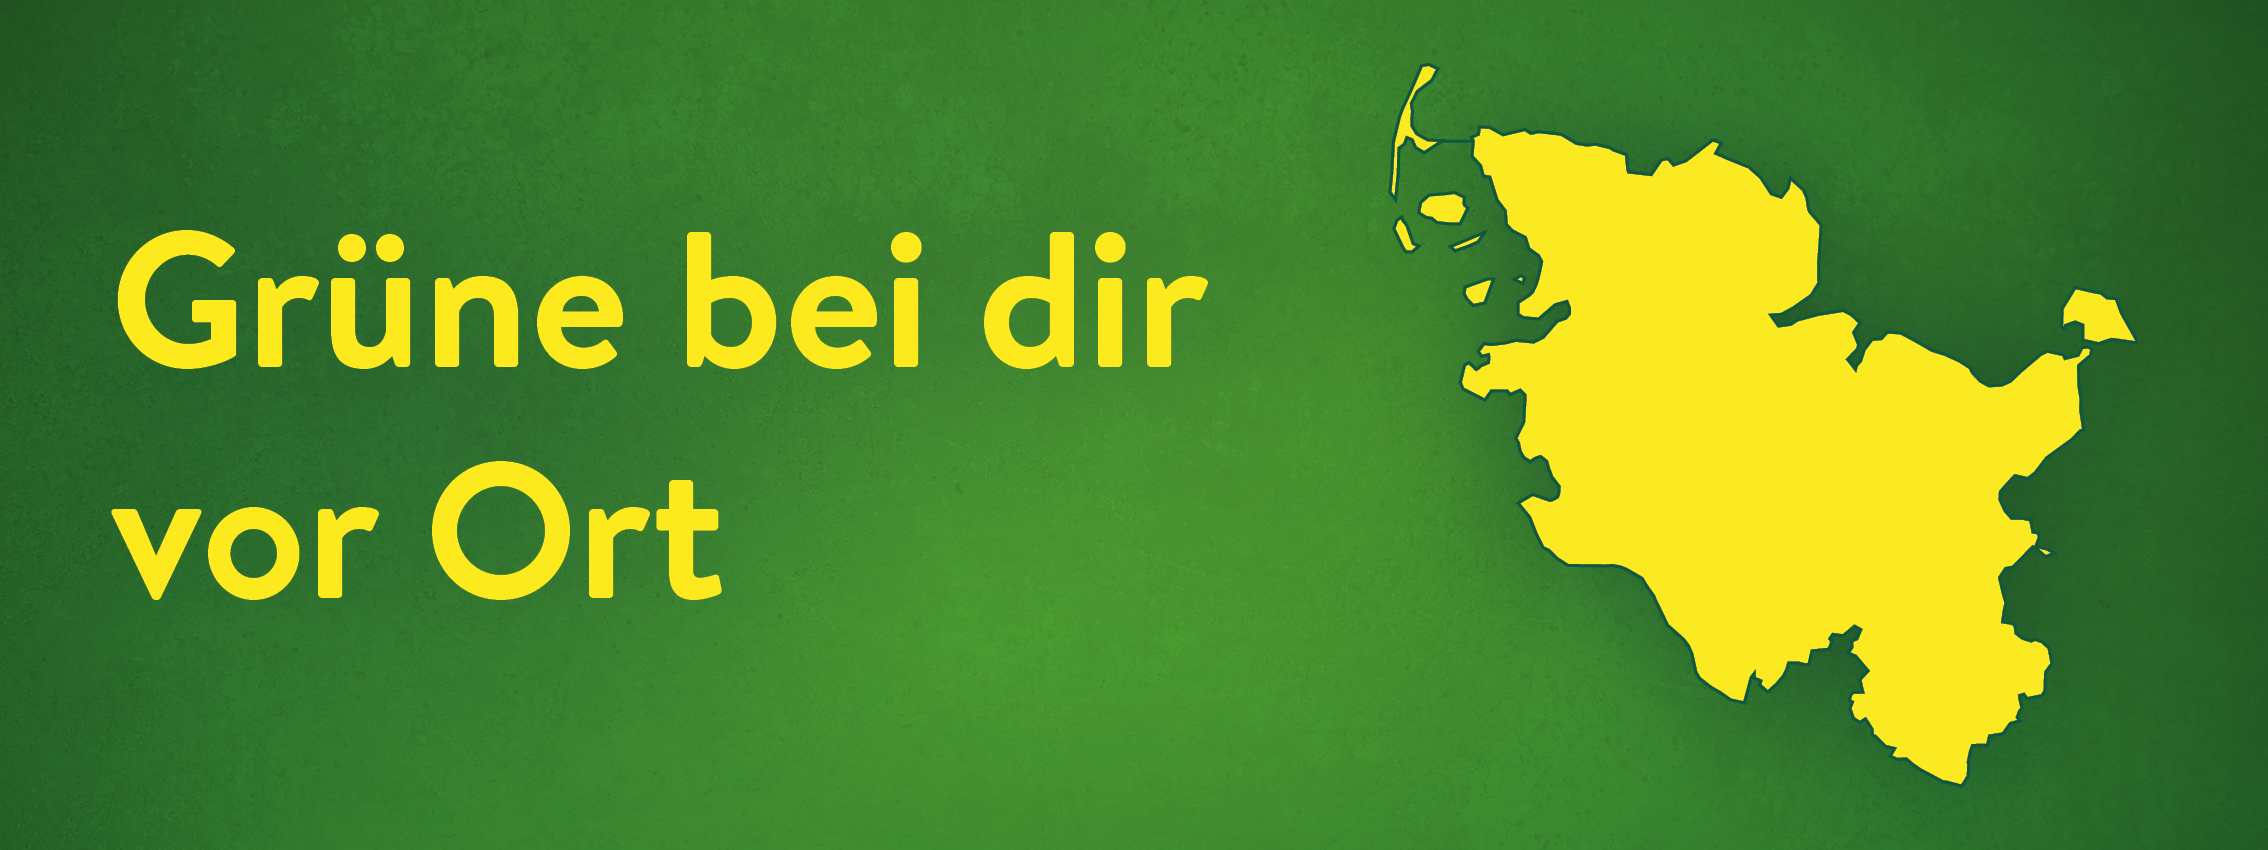 Grafik mit Schrift "Grüne bei dir vor Ort" und Landkarte von Schleswig-Holstein